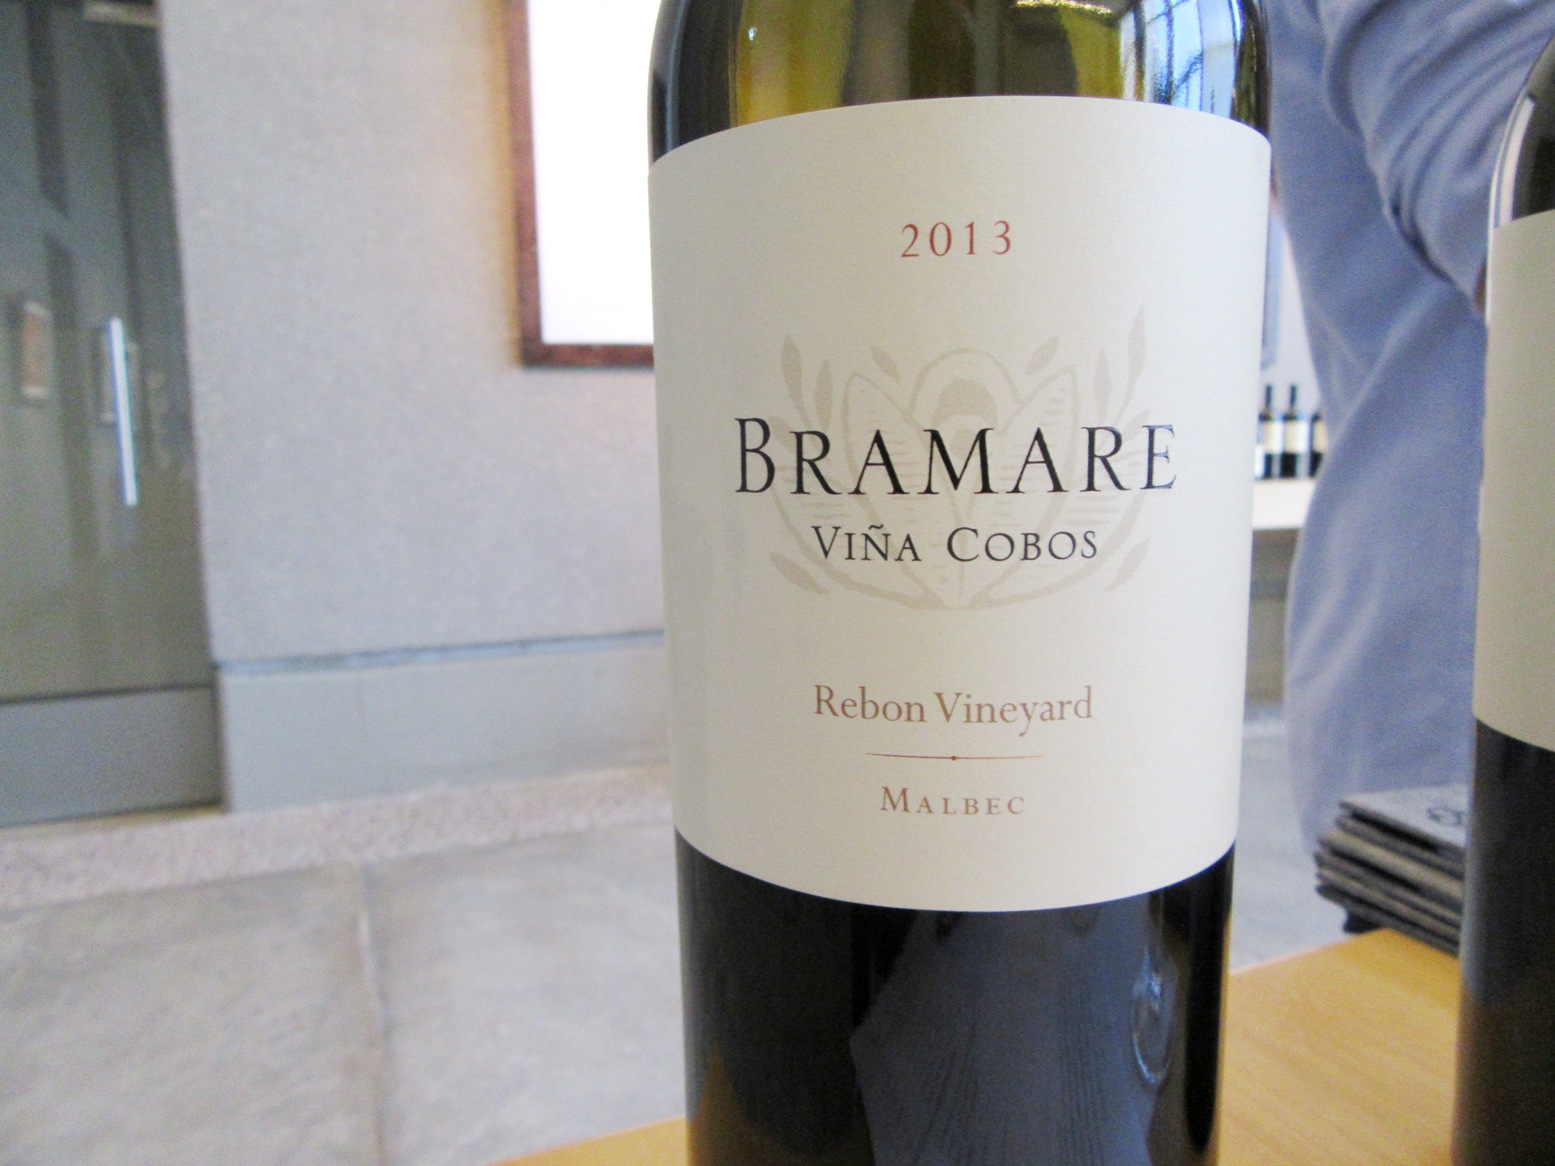 Viña Cobos, Bramare Rebon Vineyard Malbec 2013, Uco Valley, Mendoza, Argentina, Wine Casual